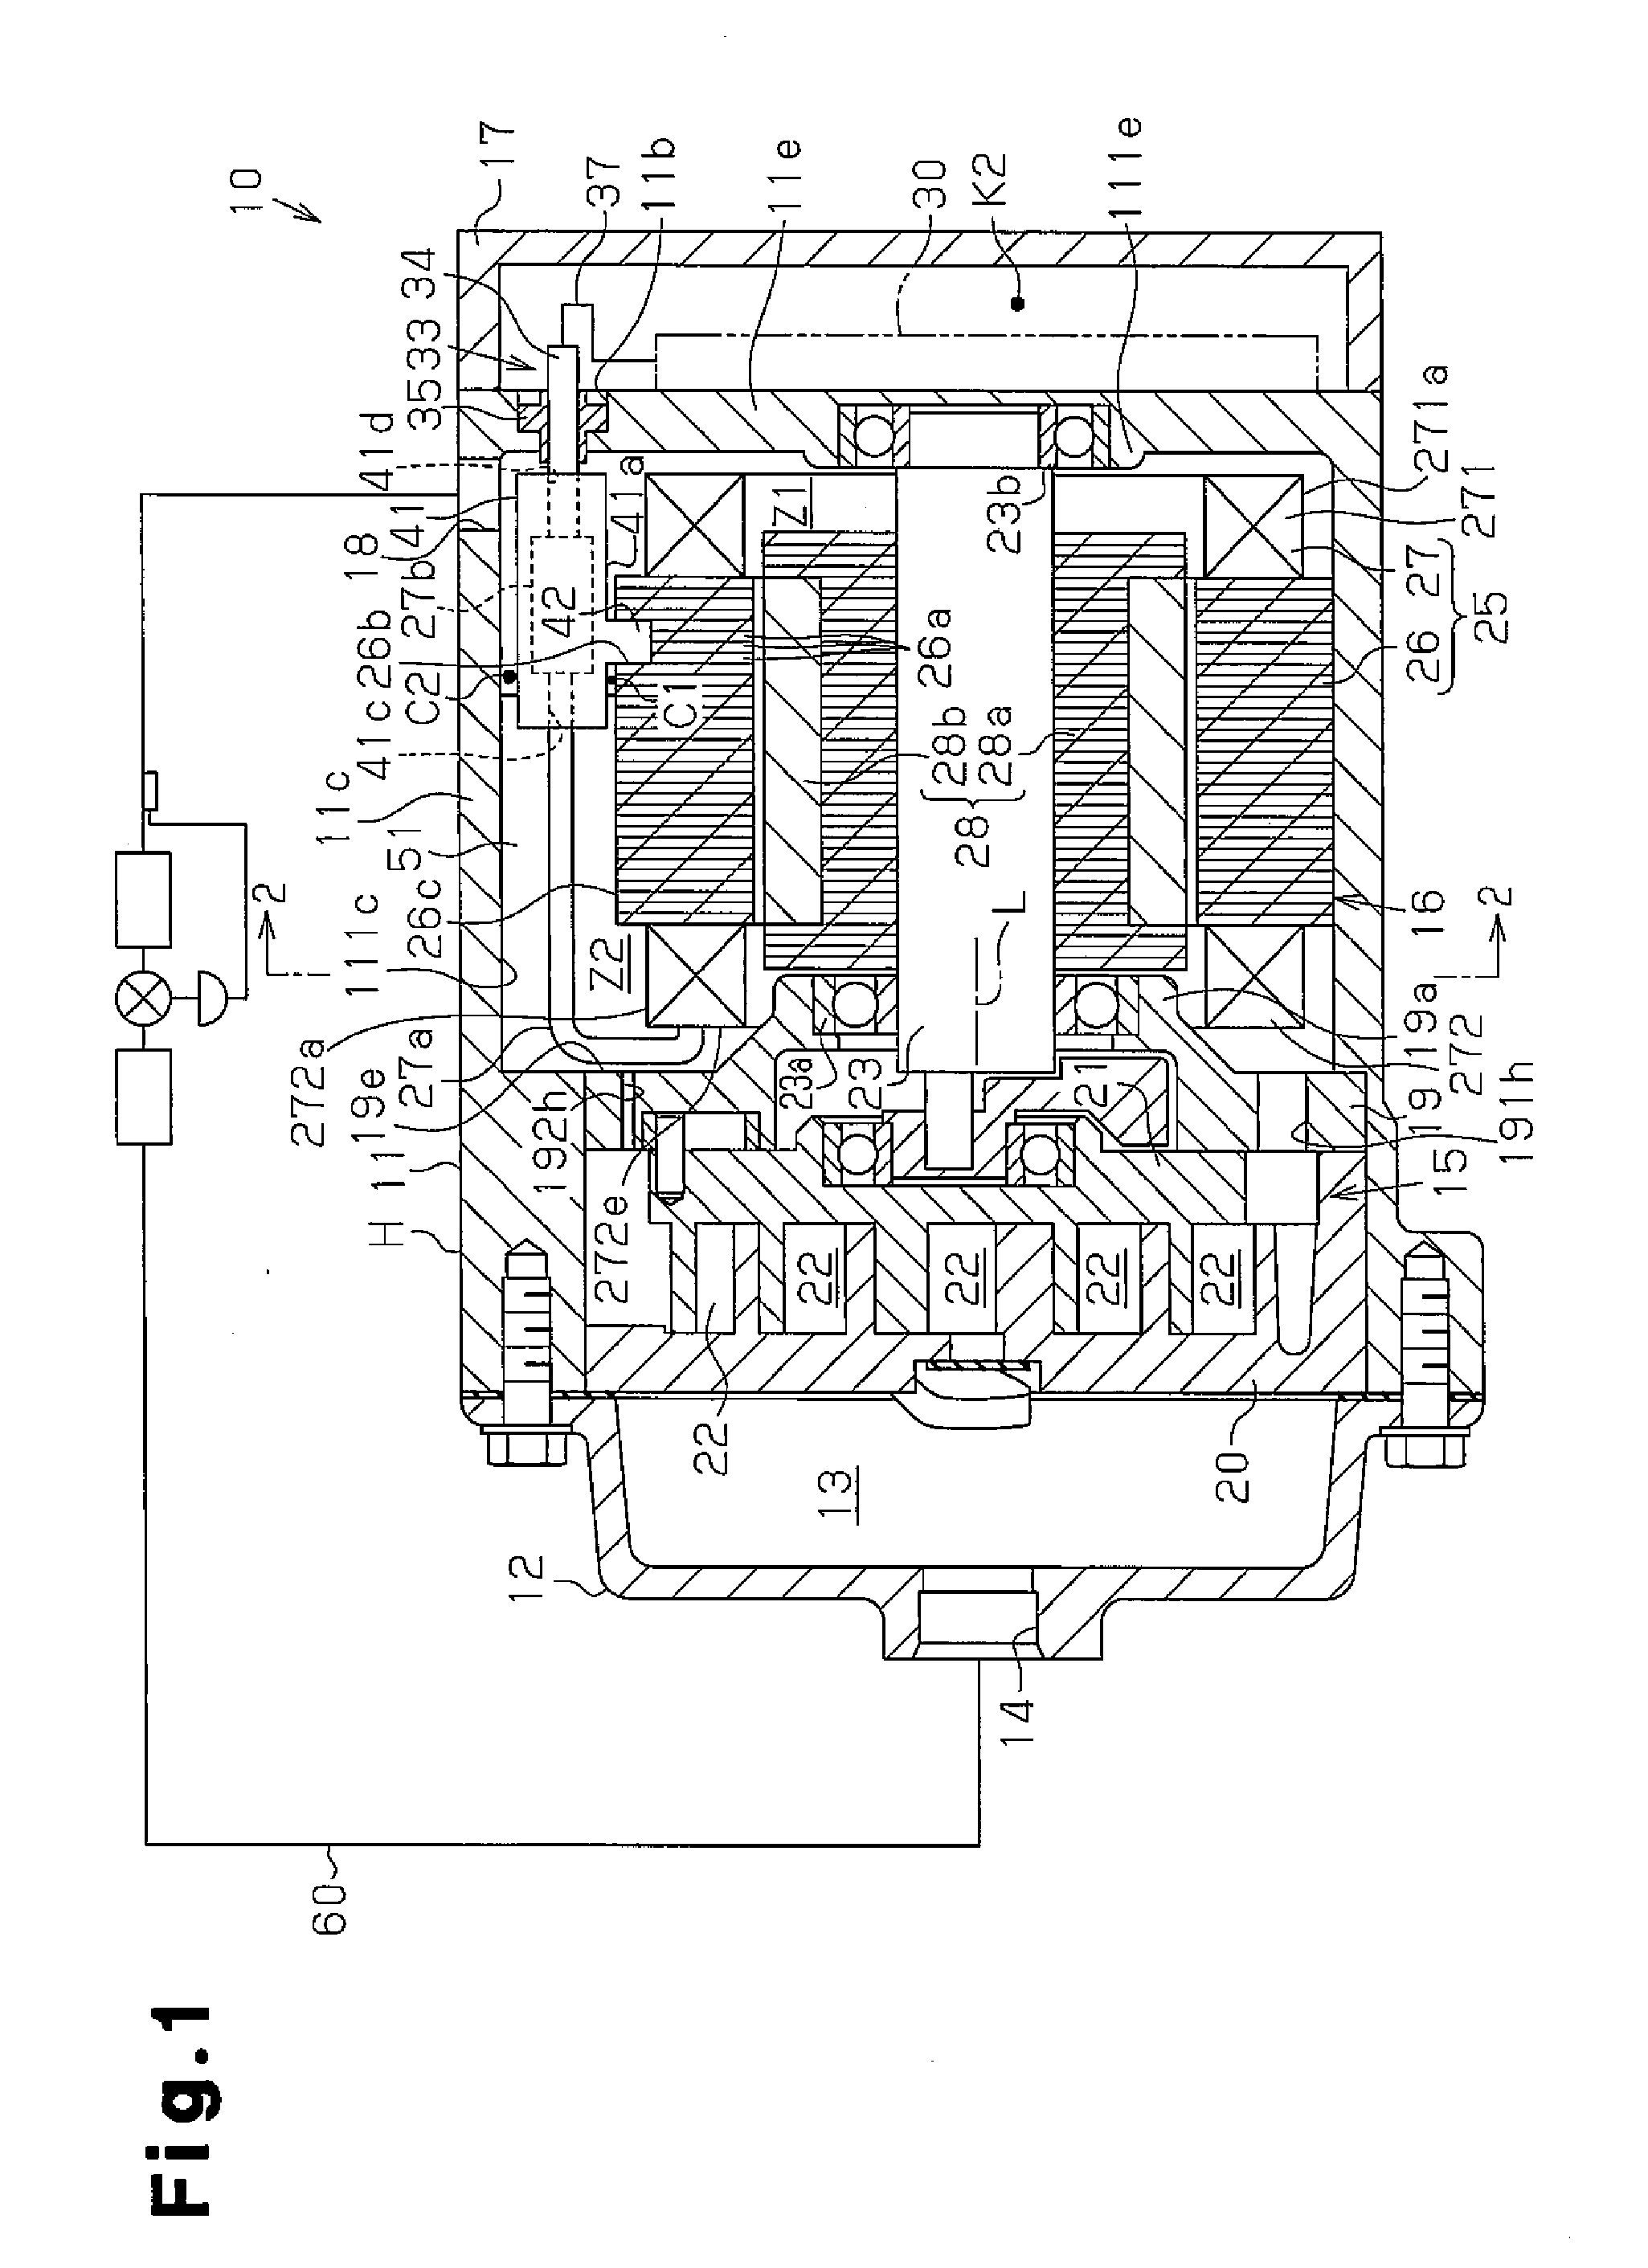 Motor-driven compressor